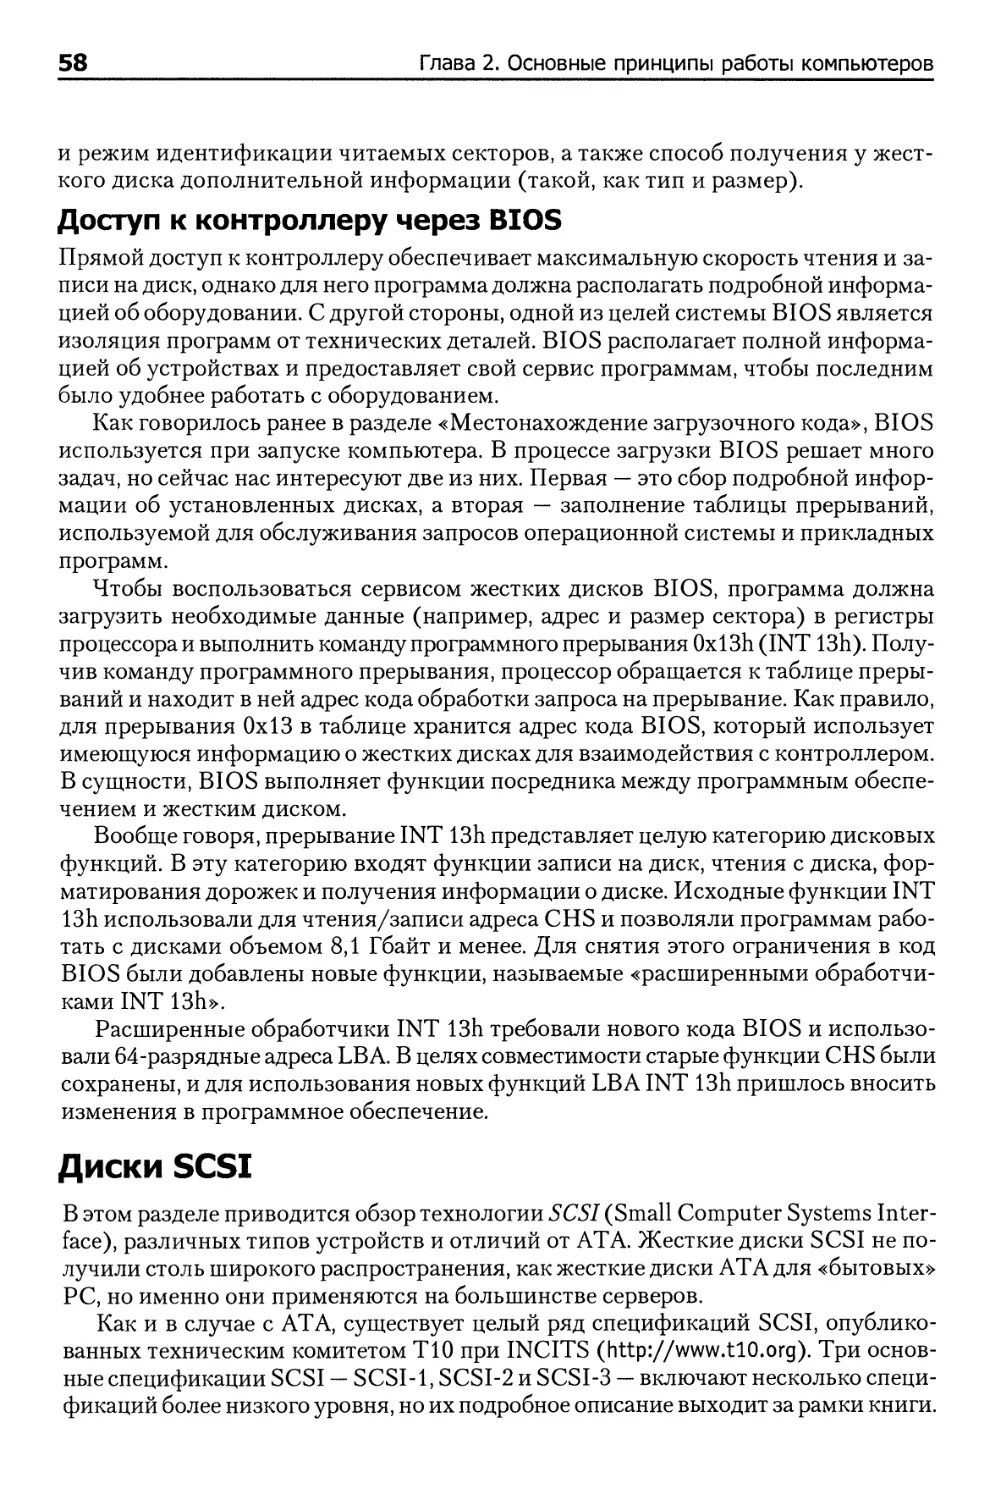 Диски SCSI